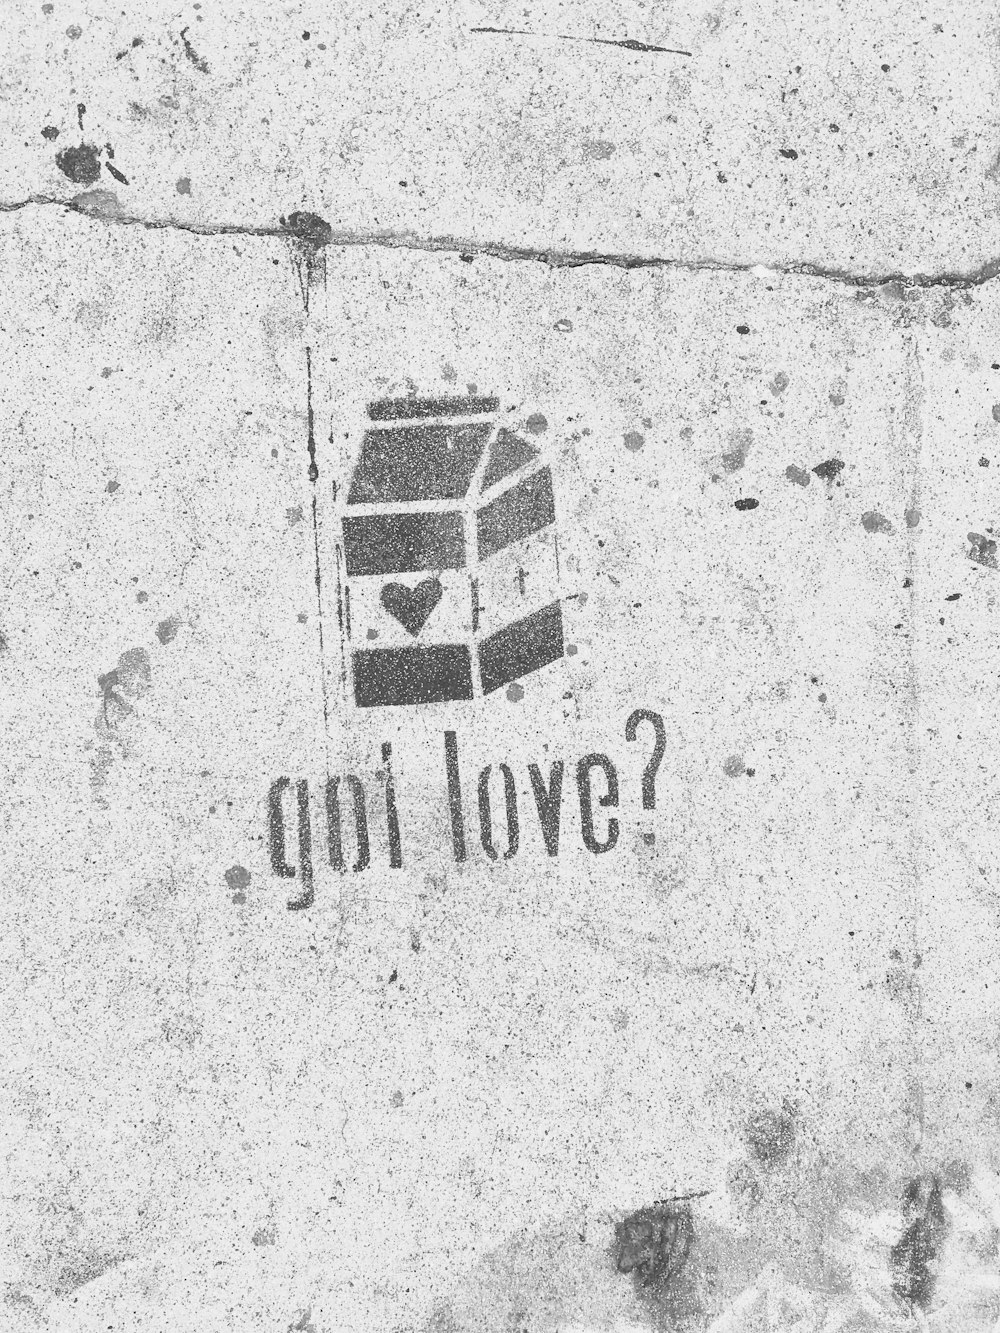 Hast du Liebe? mit Milchtüten-Graffiti an Betonwand